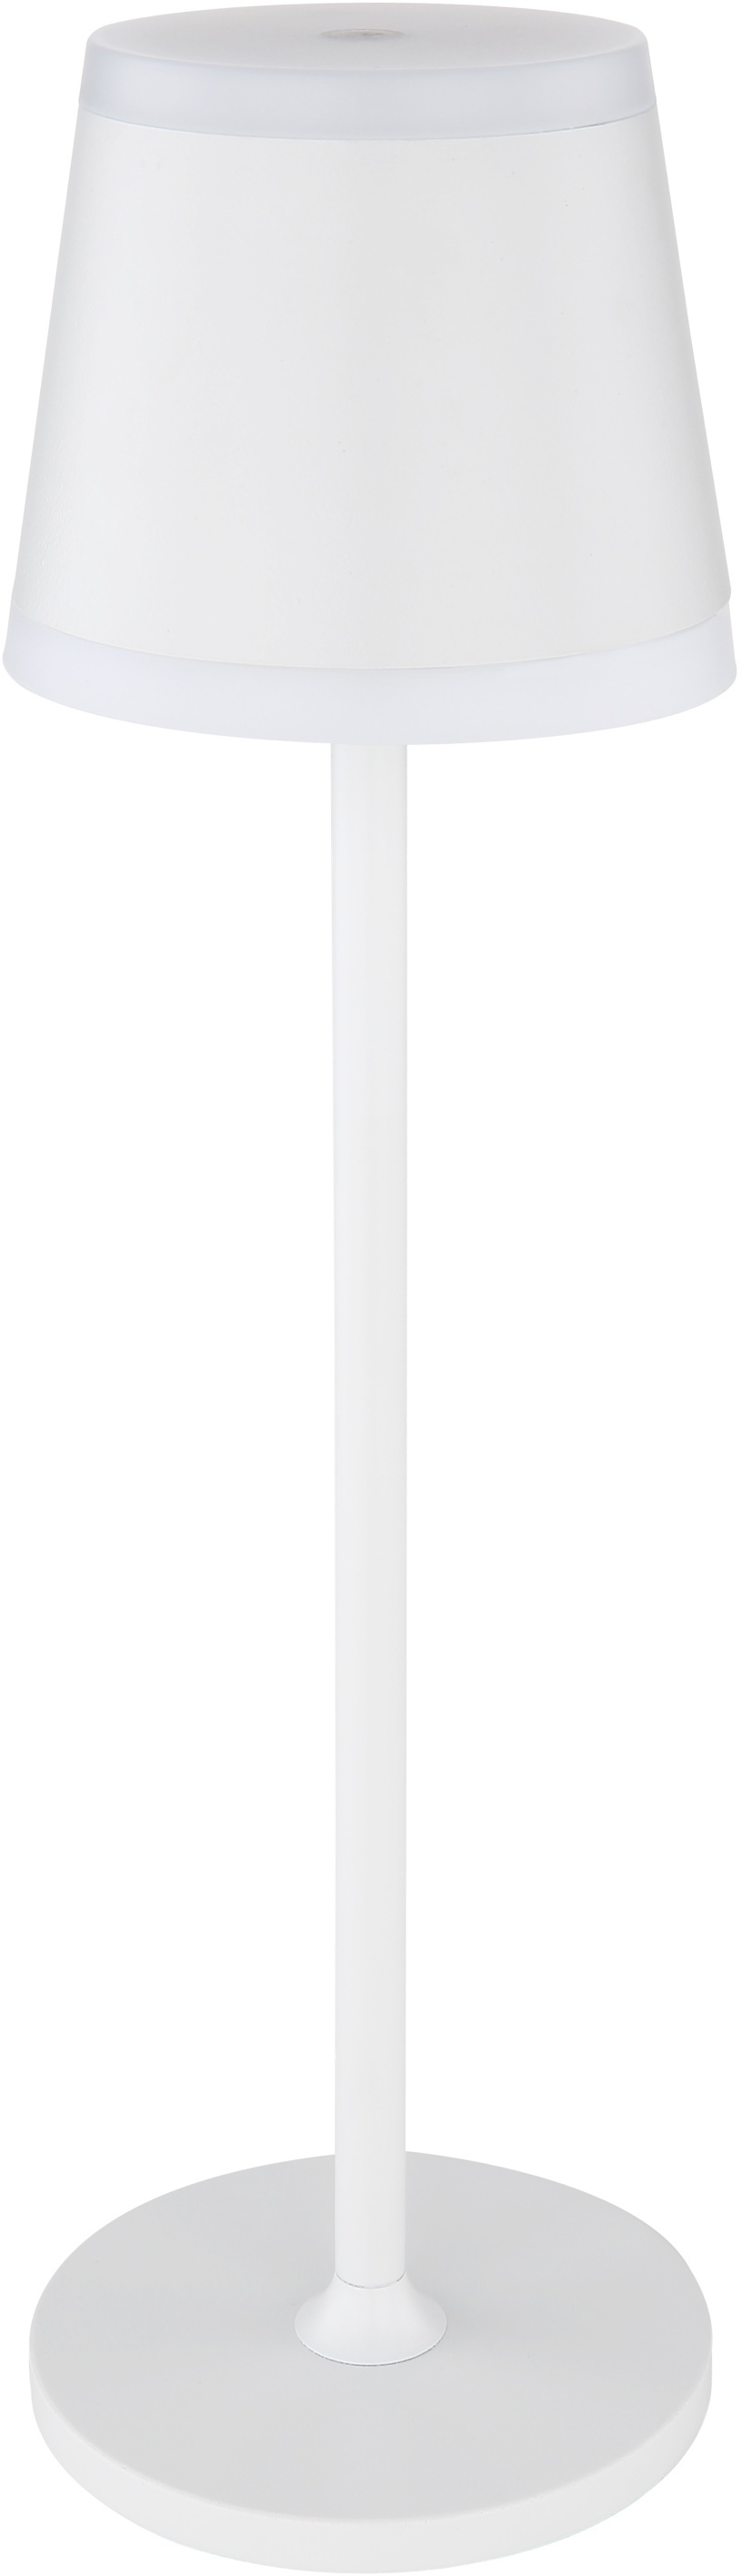 Tischleuchte RIDLEY (DH 11x38,50 cm) - weiß